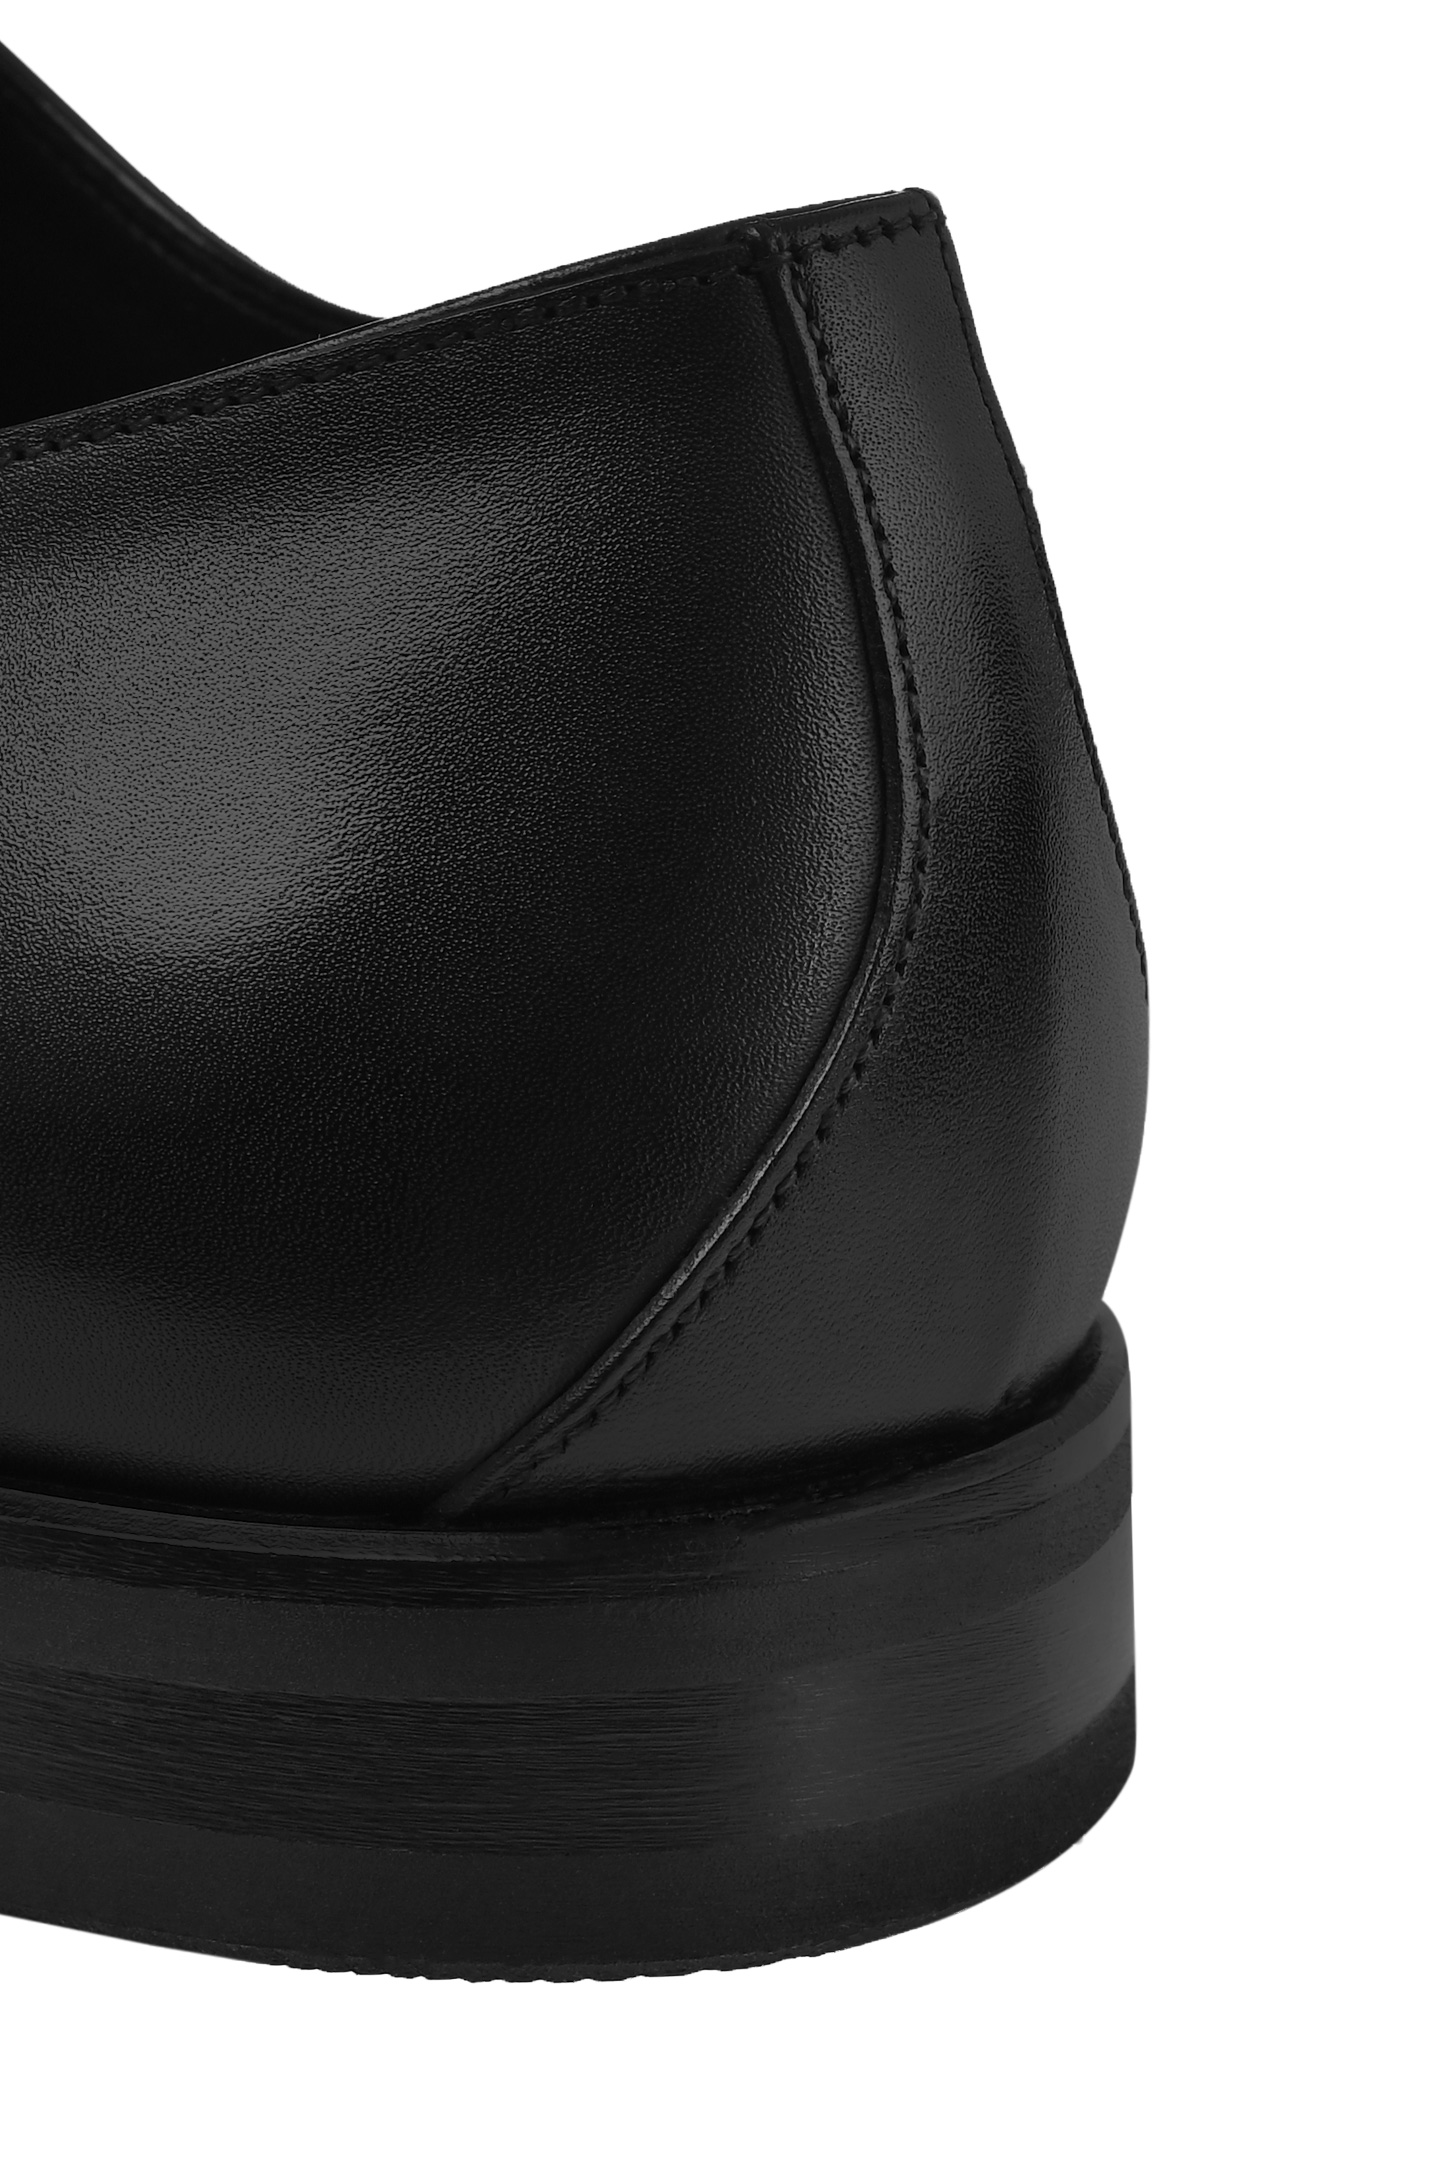 Туфли STEFANO RICCI UF02_G5173 VT, цвет: Черный, Мужской